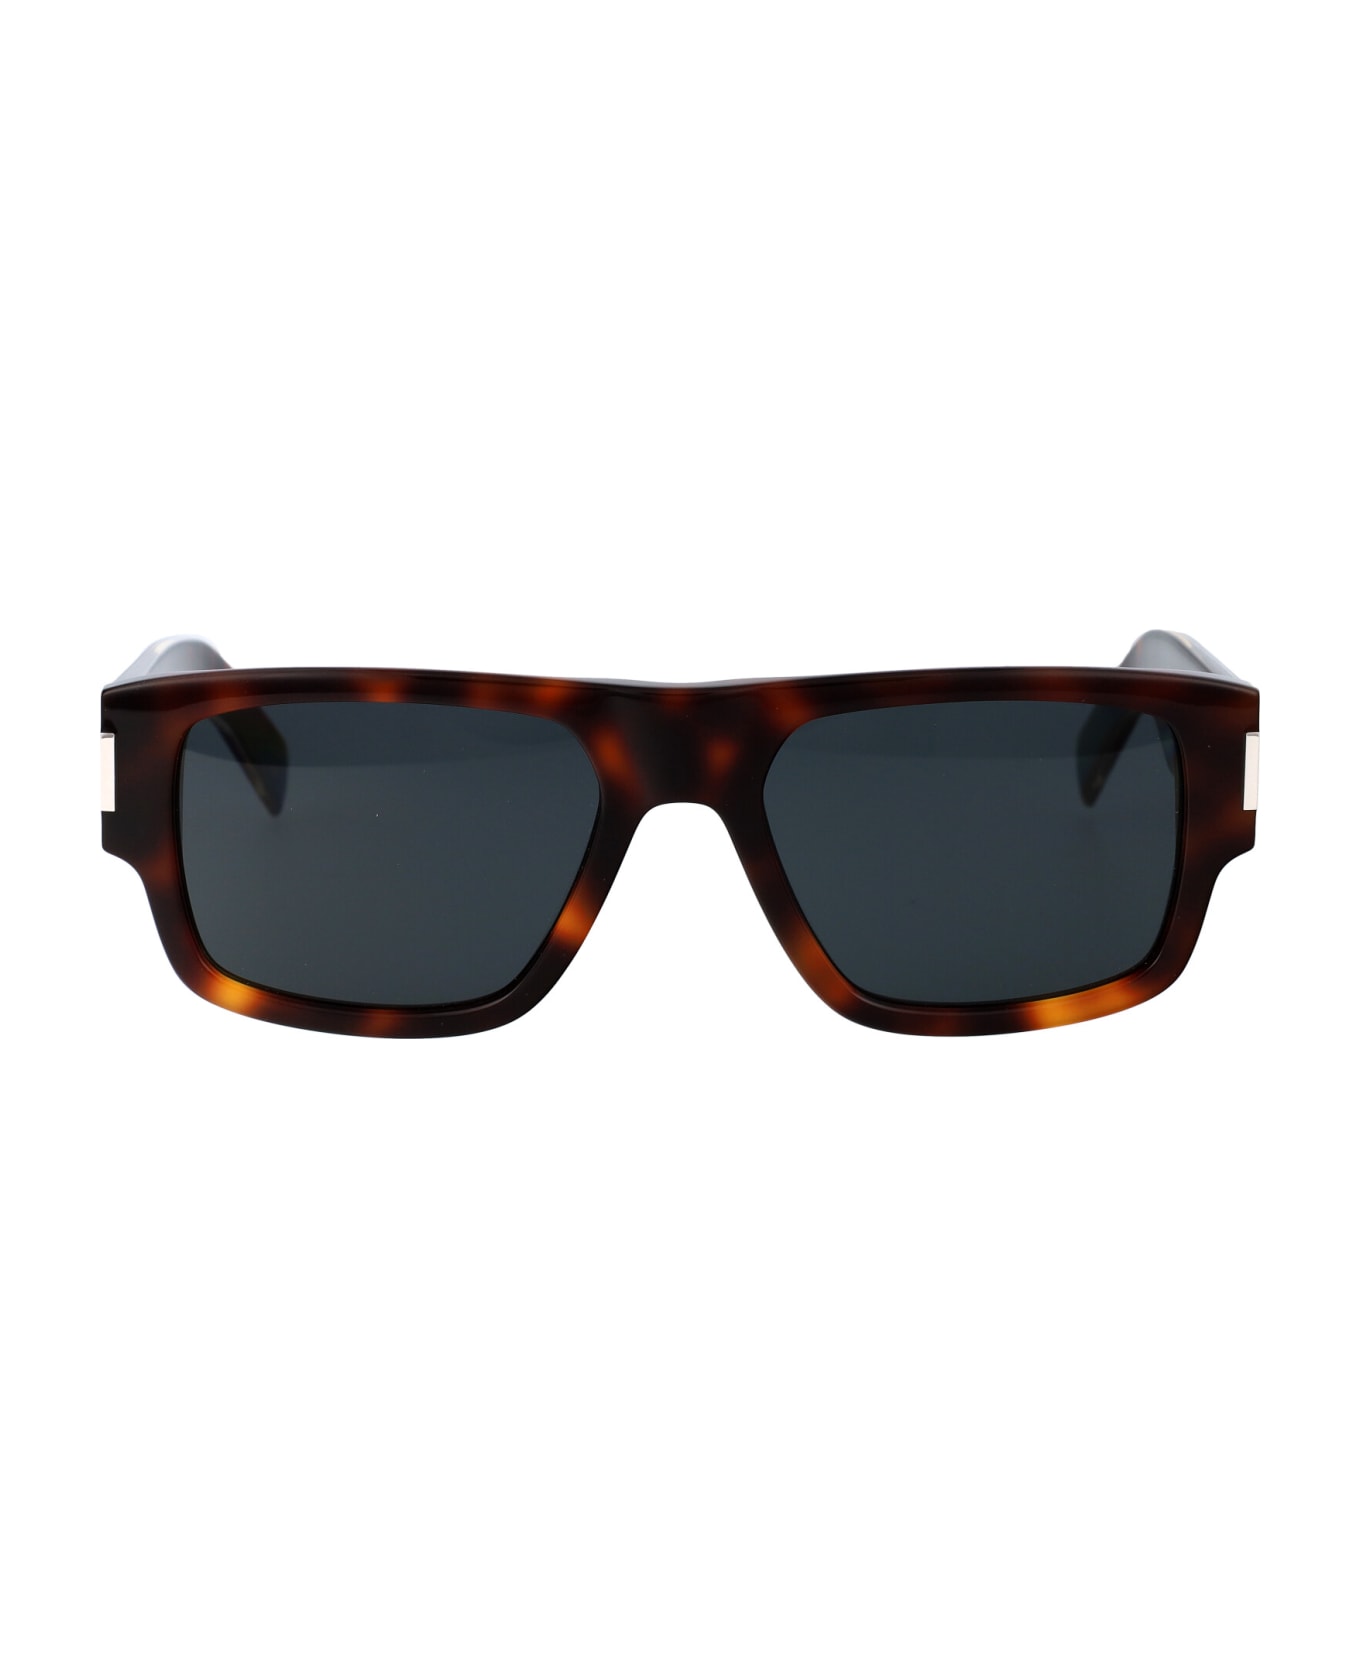 Saint Laurent Eyewear Sl 659 Sunglasses - 002 HAVANA CRYSTAL BLACK